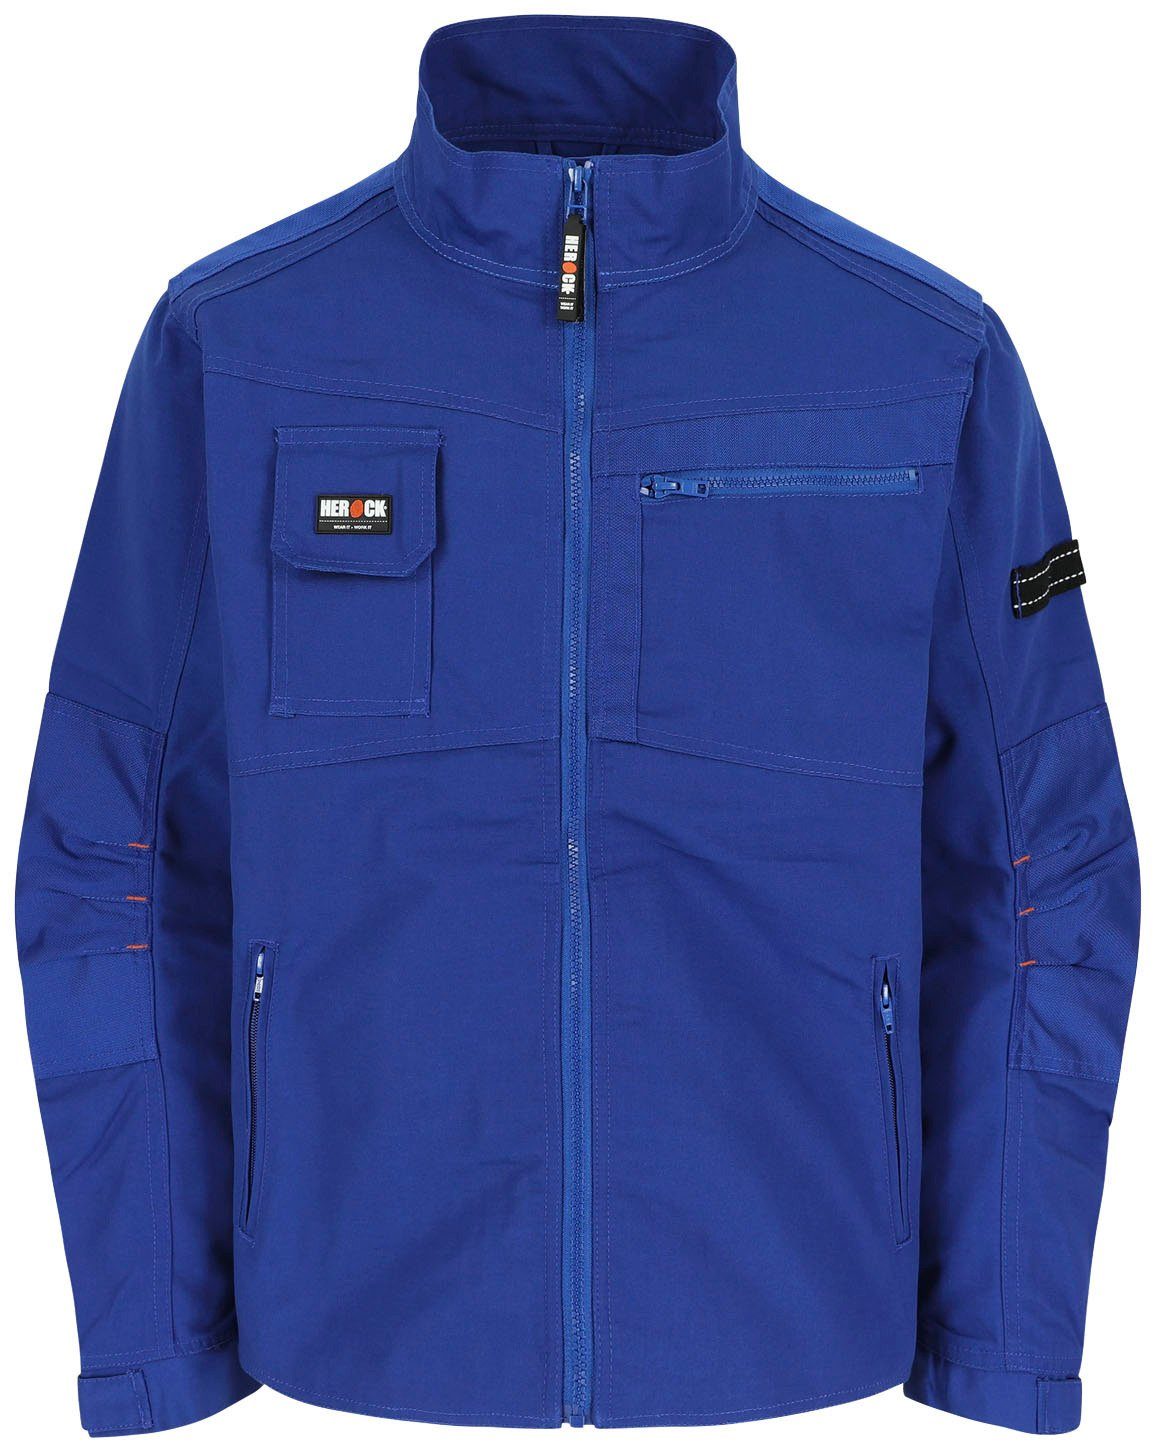 Herock Arbeitsjacke Anzar Jacke Wasserabweisend - 7 Taschen - robust - verstellbare Bündchen blau